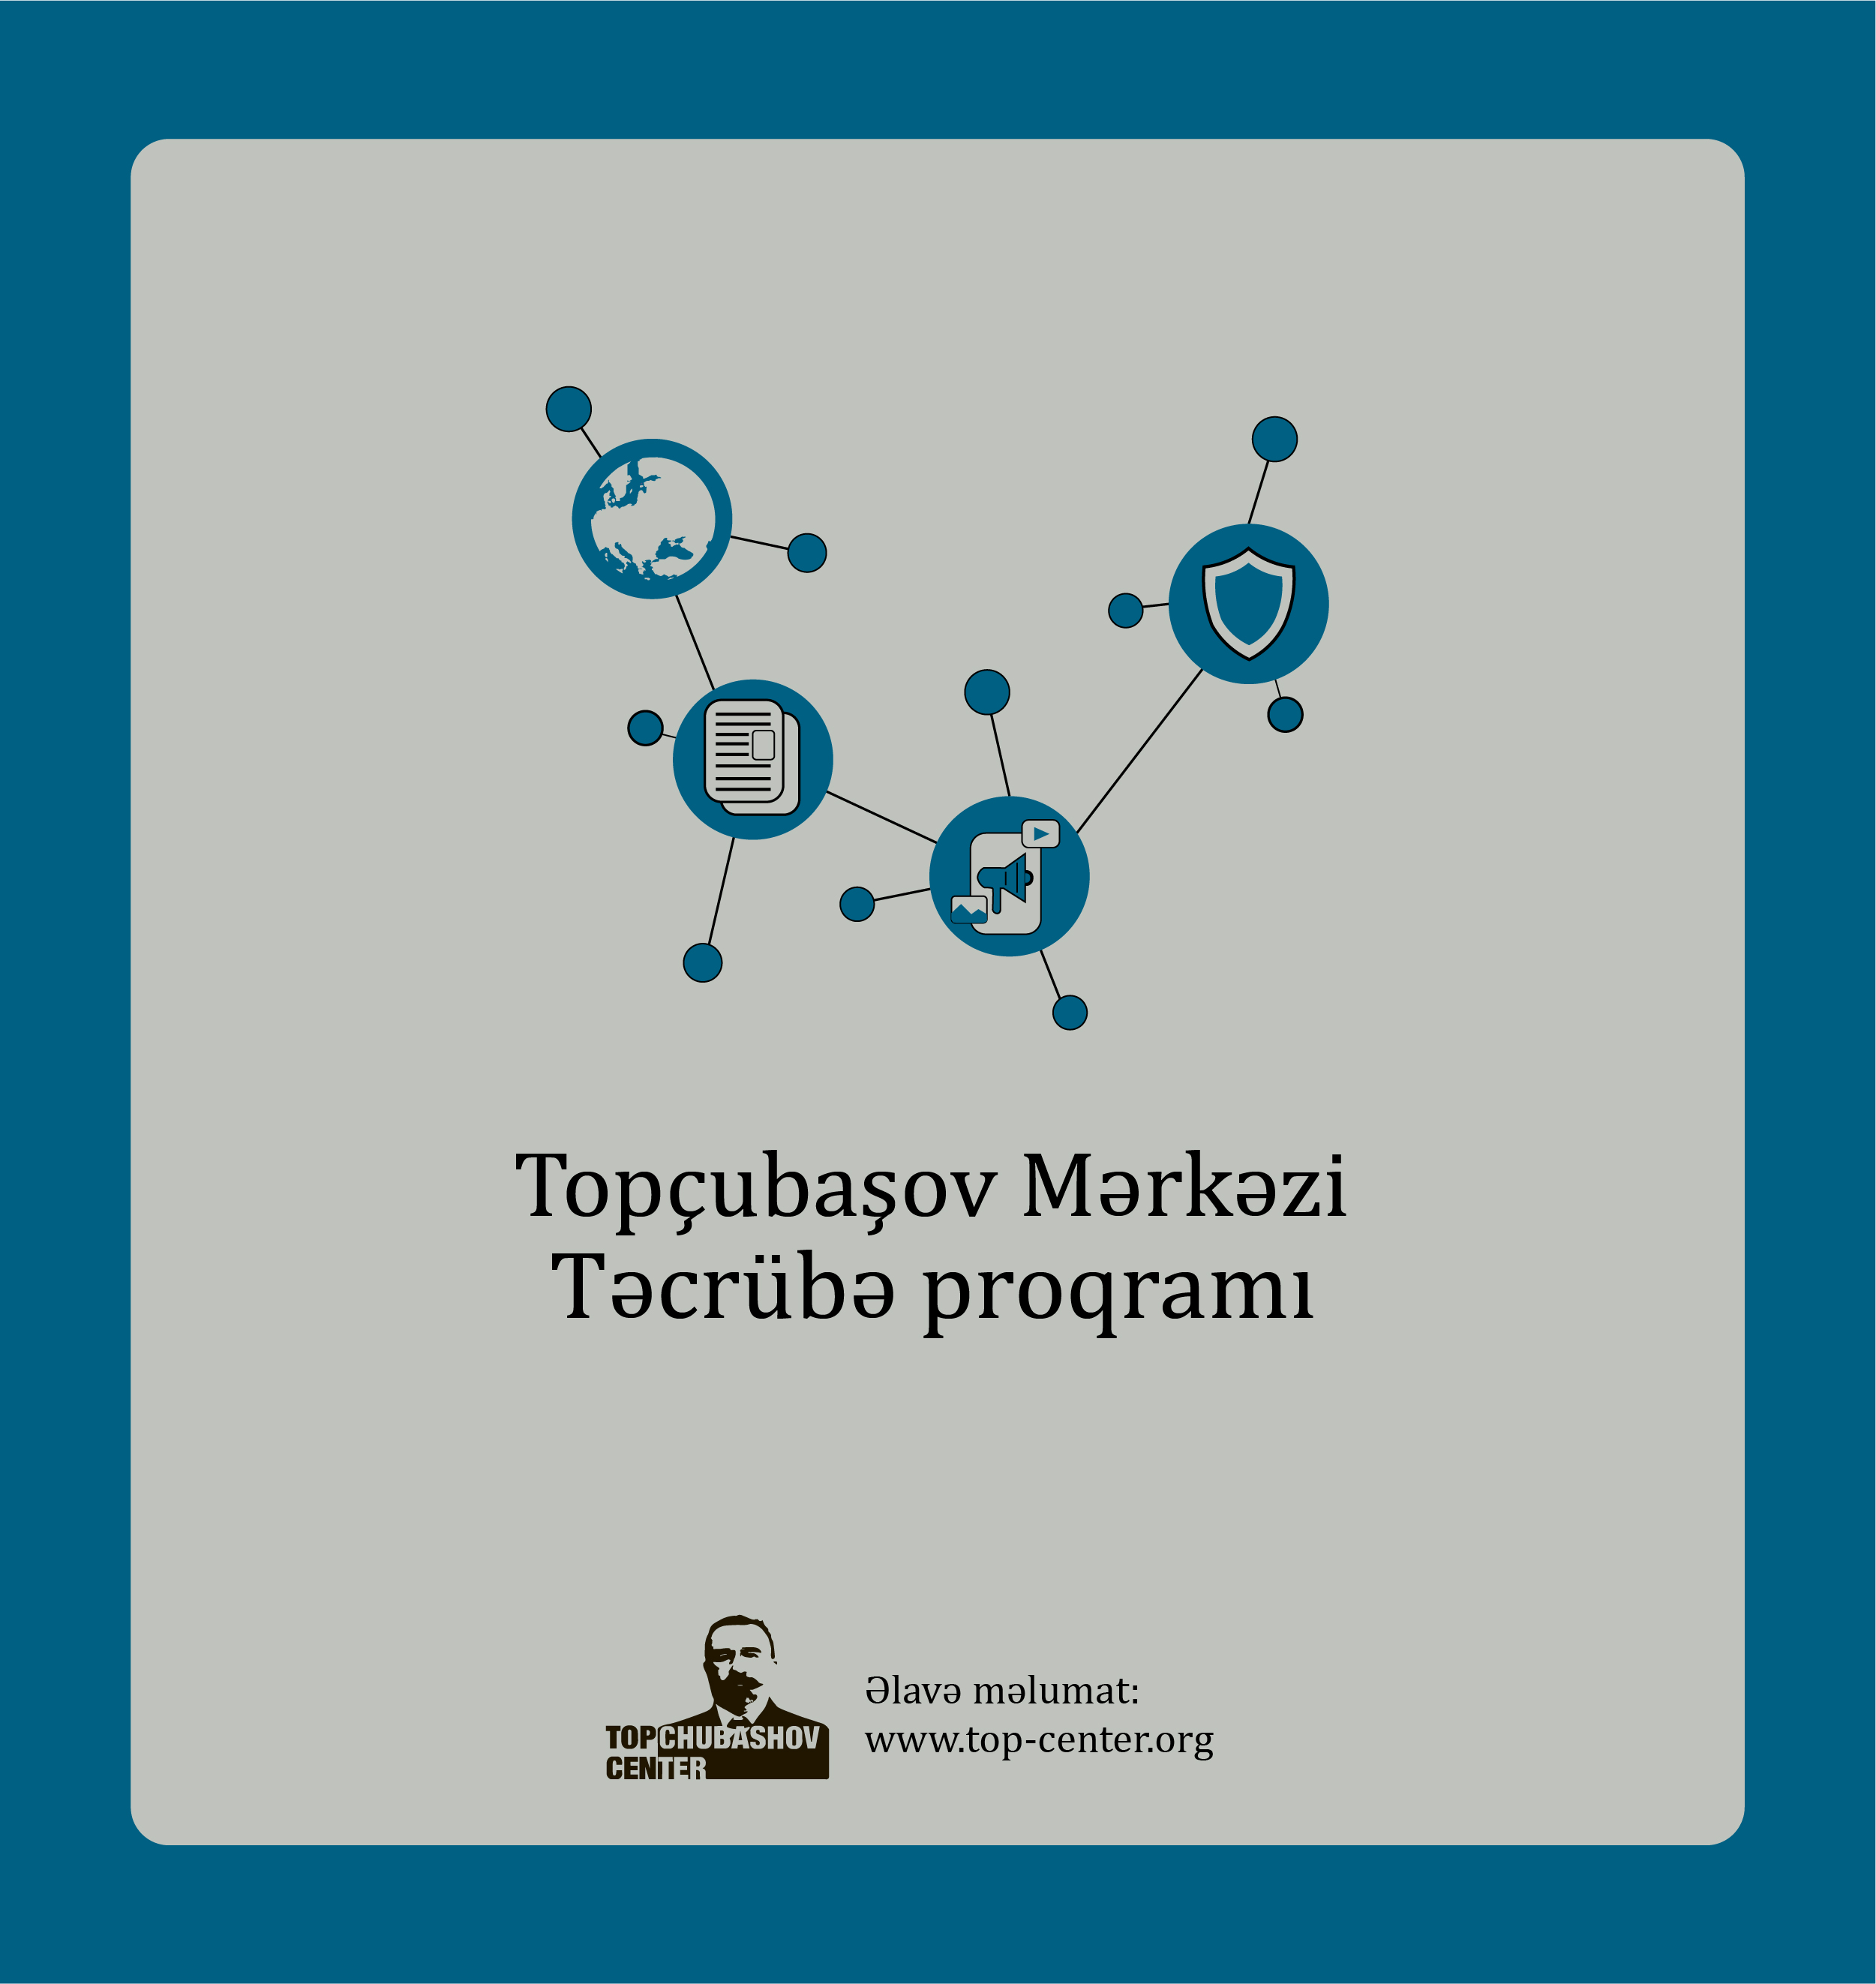 Topchubashov Internship Program